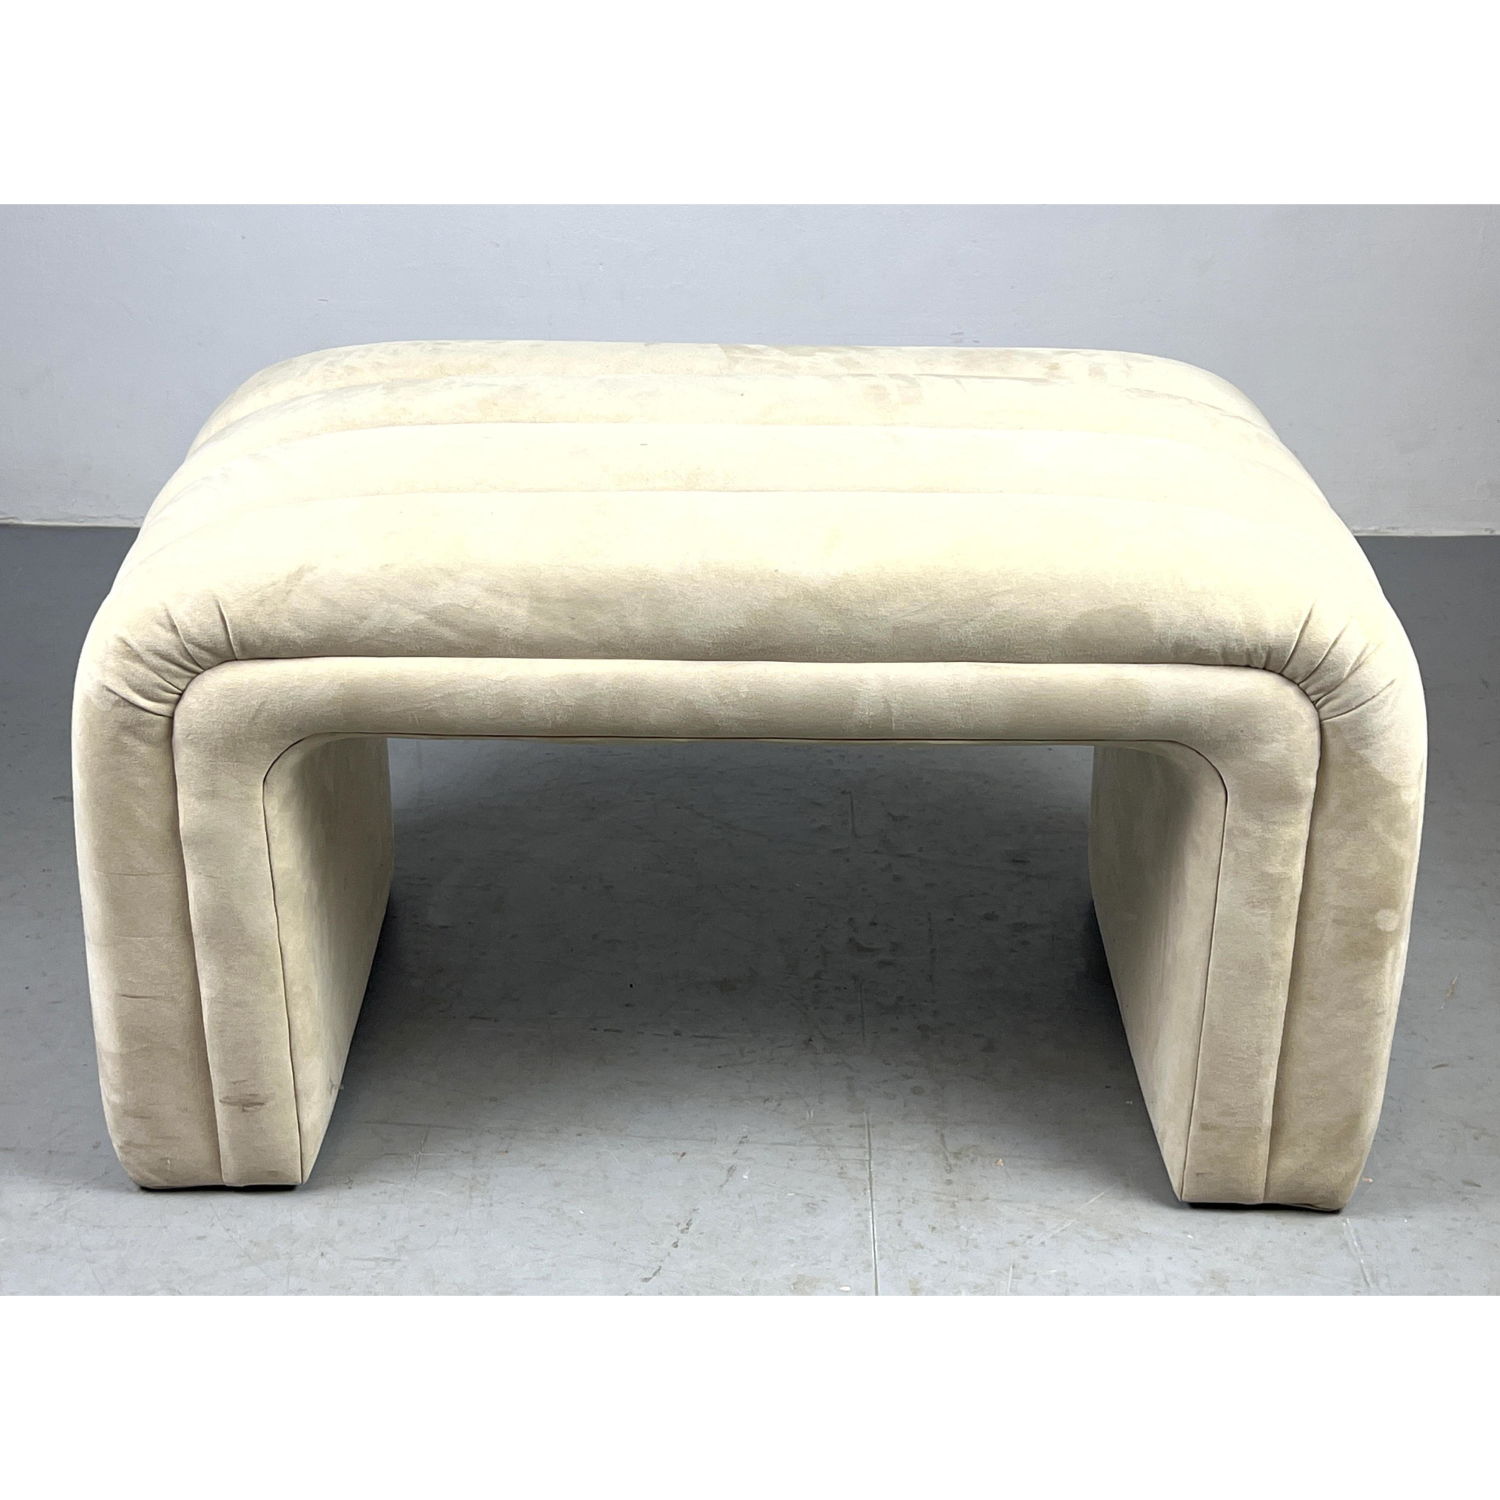 Modernist Channel Upholstered Bench  2ff2ff